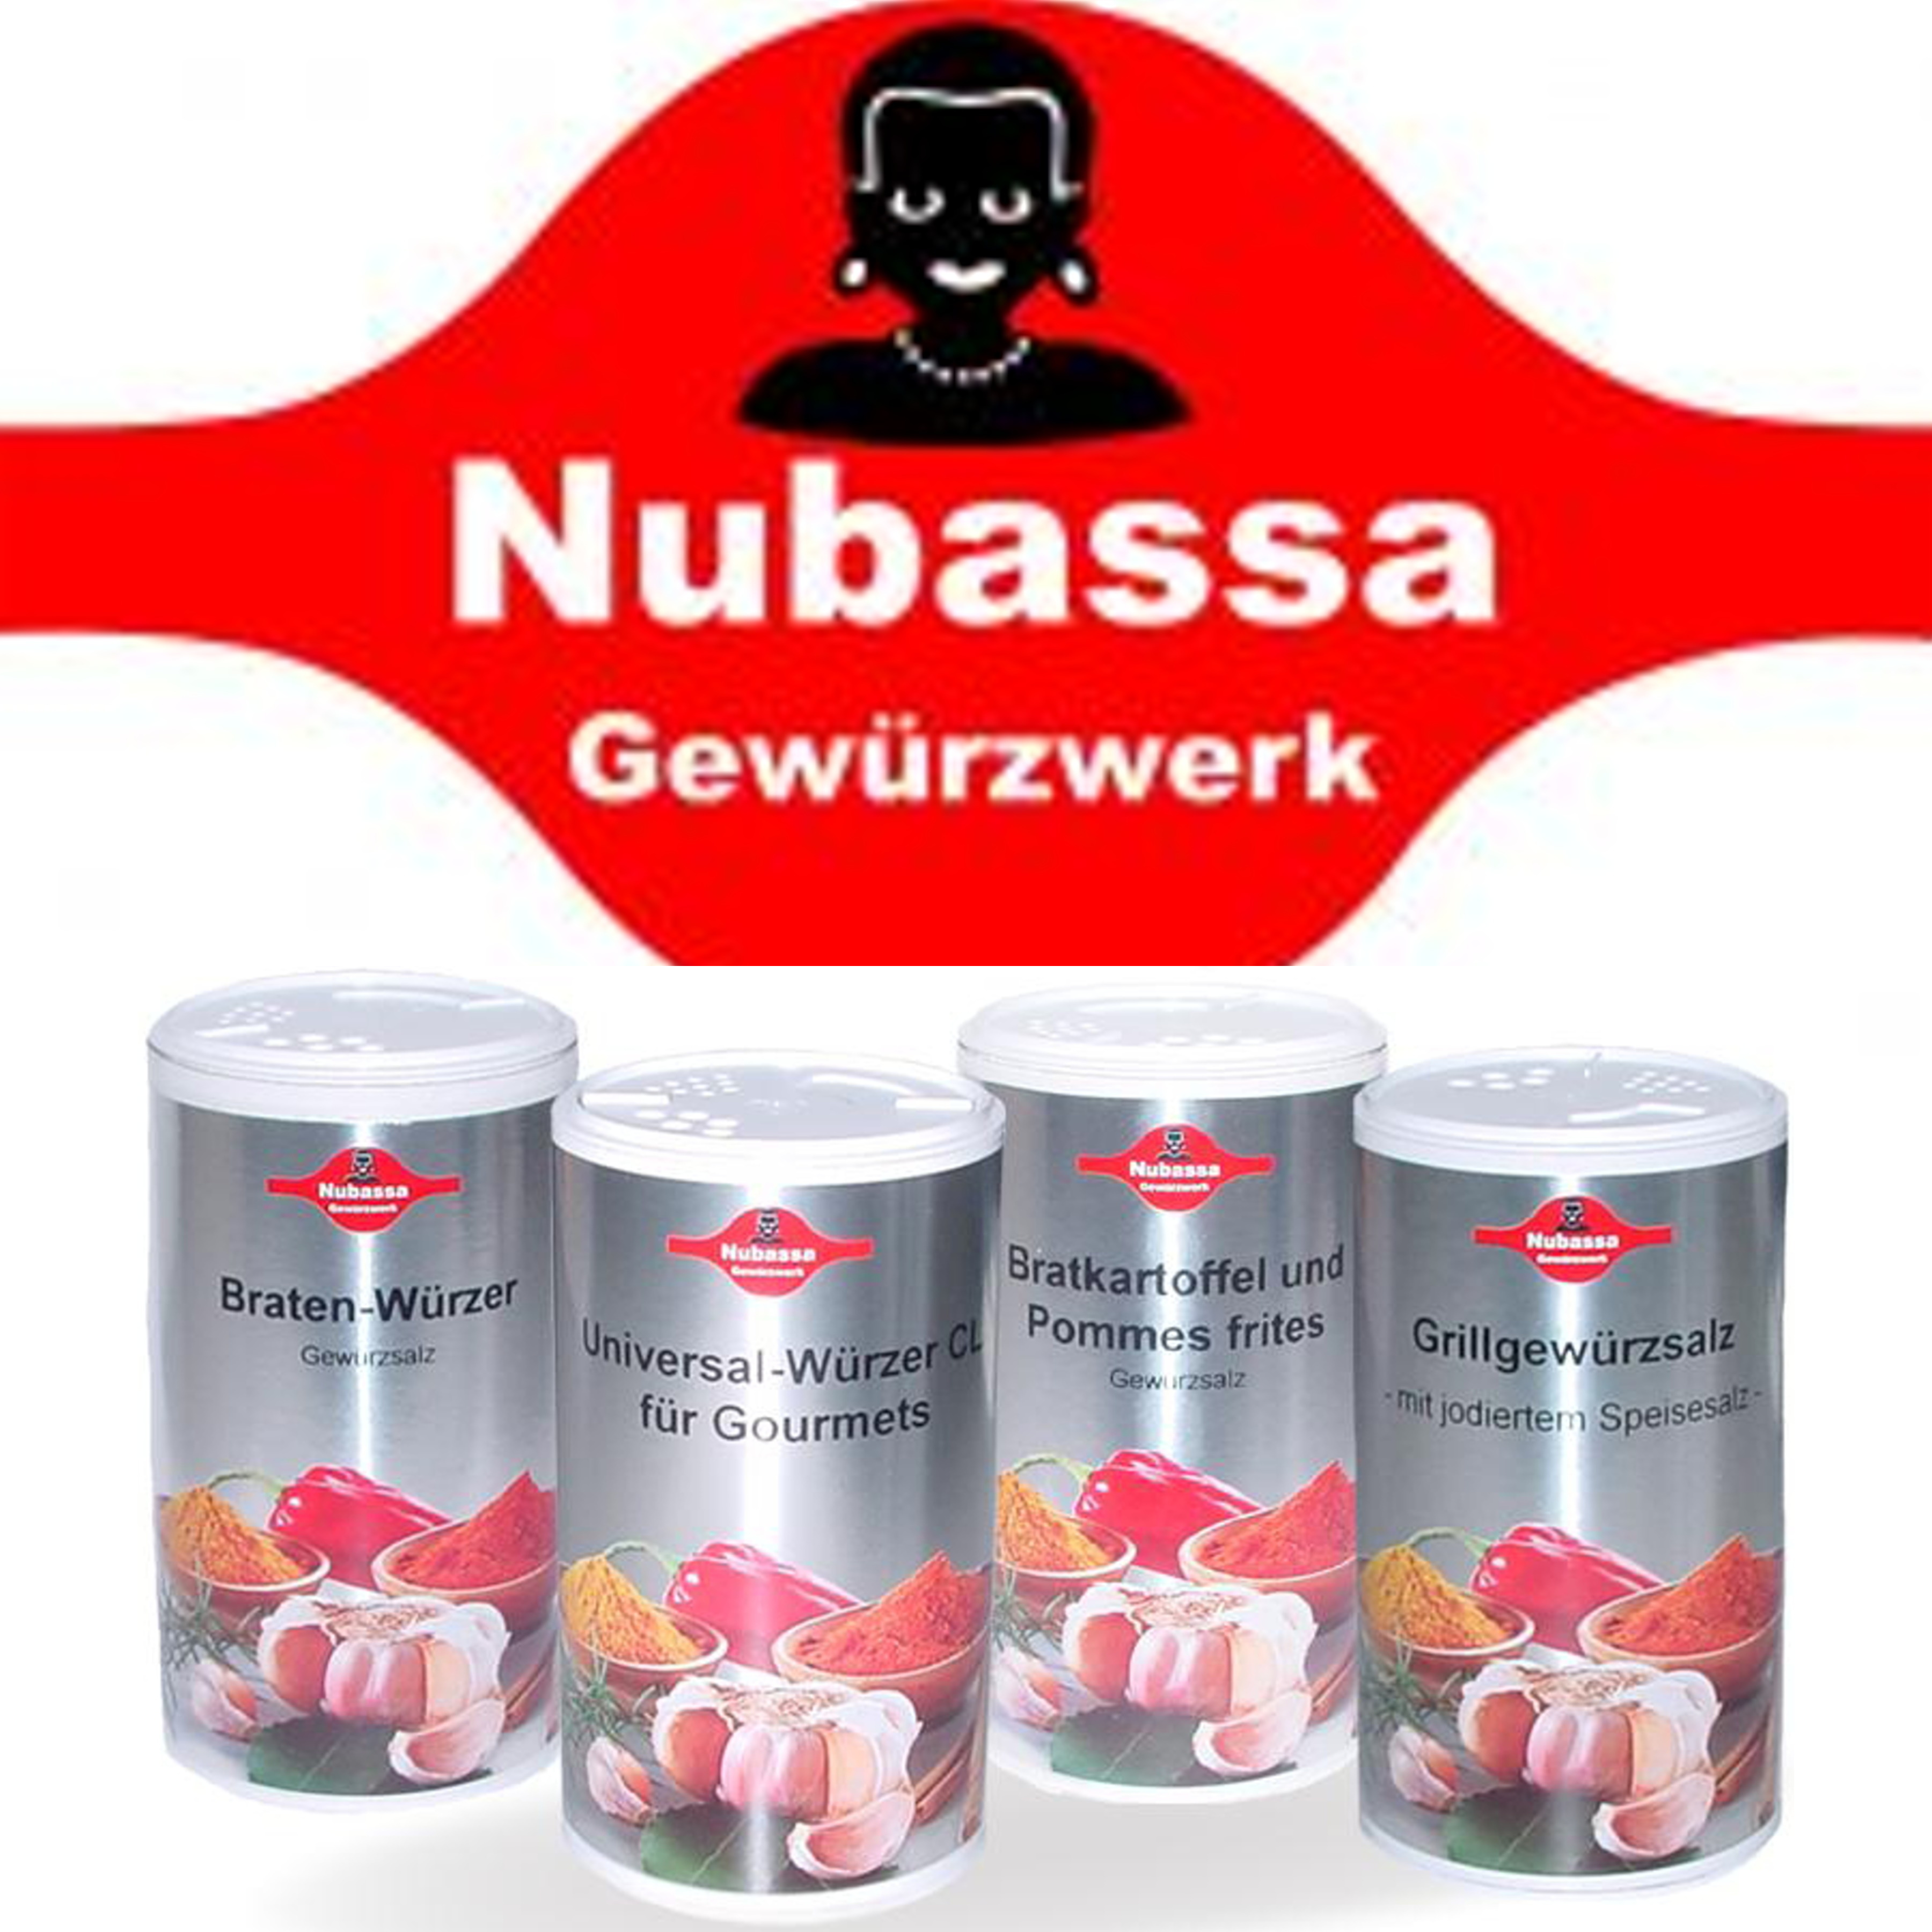 Nubassa Gewürze kaufen in Grabos-Online-Shop